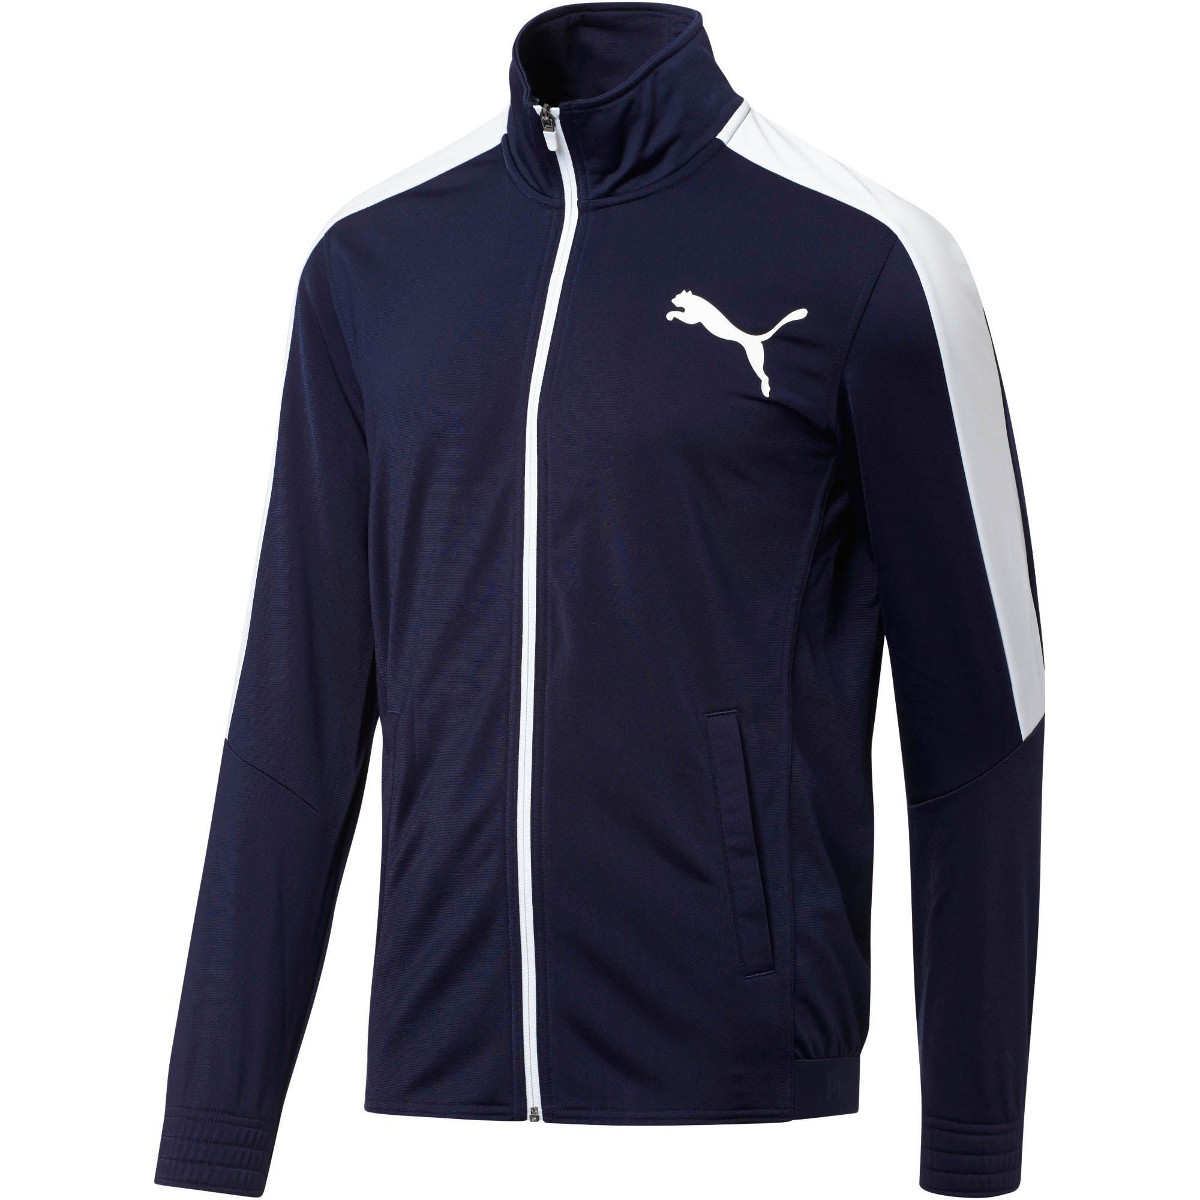 Puma Men's Contrast Track Jacket - Blue, XL